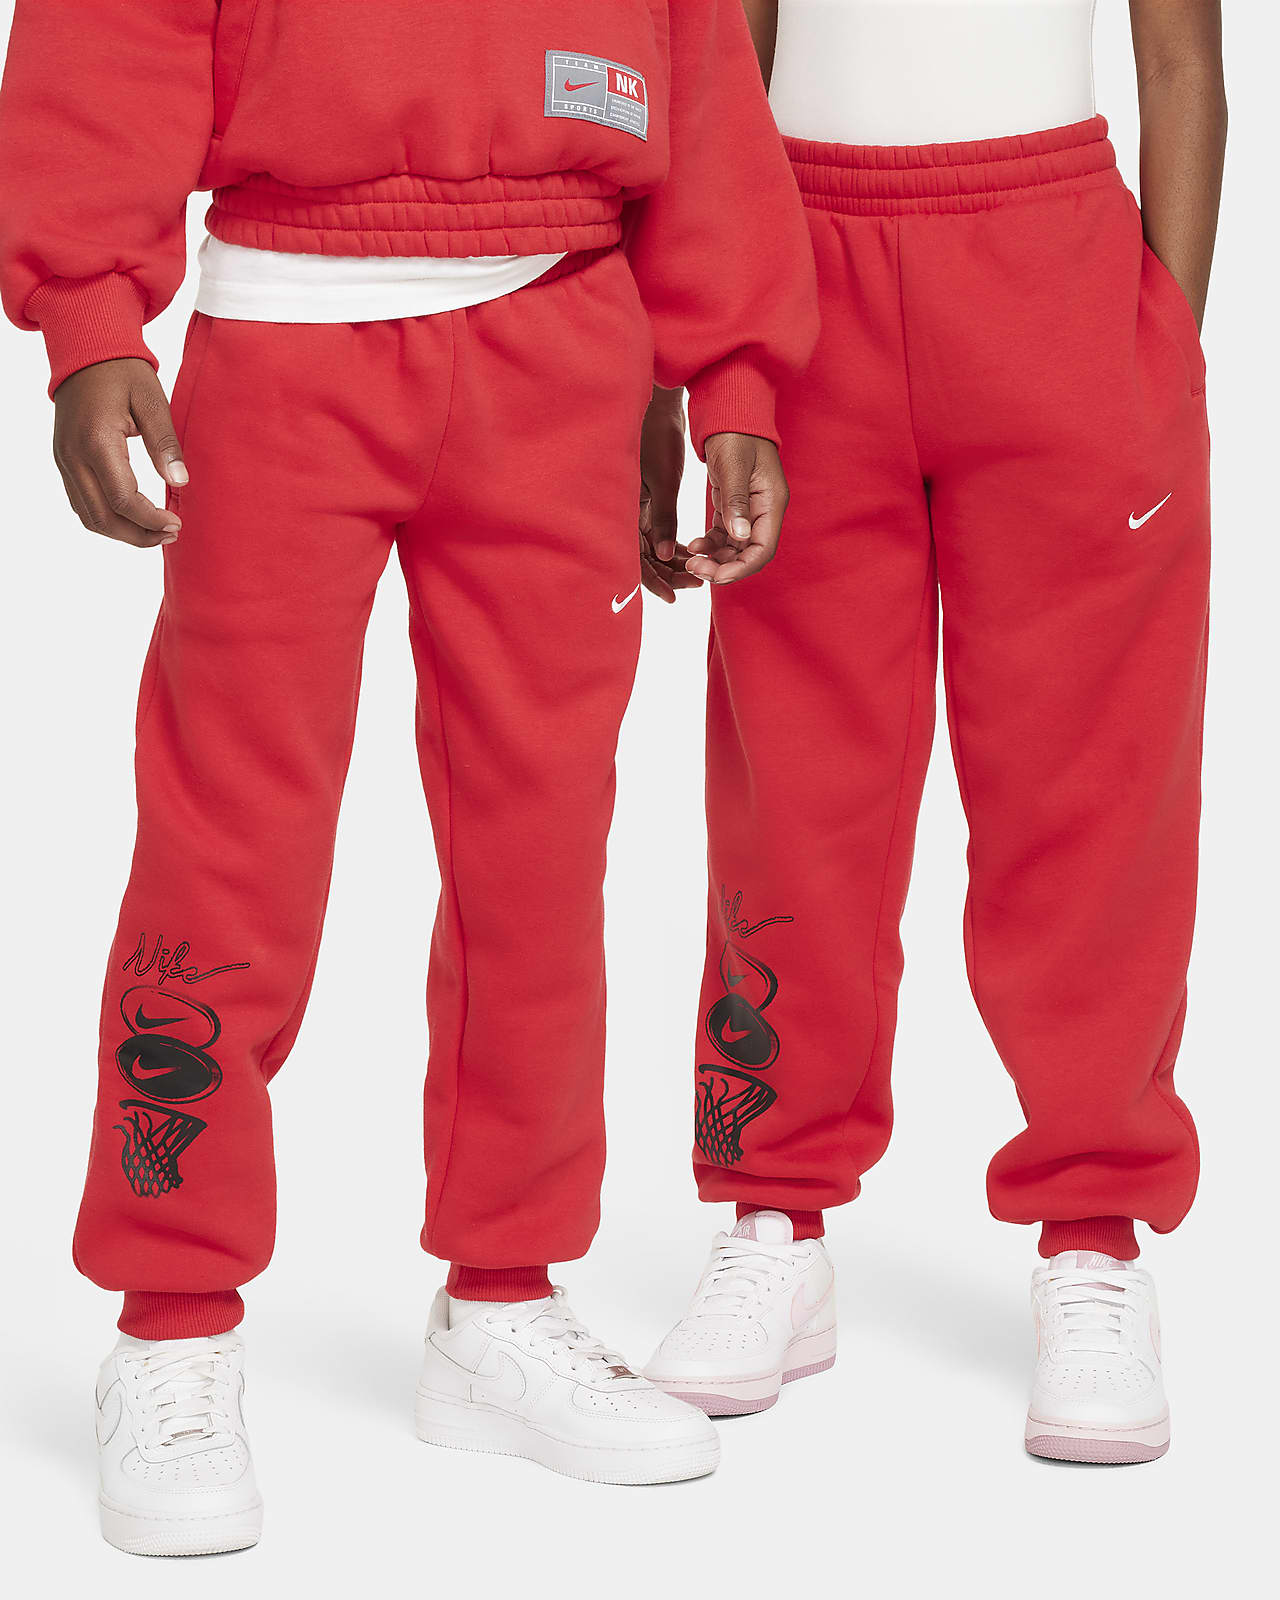 Nike Culture of Basketball Big Kids' Fleece Pants